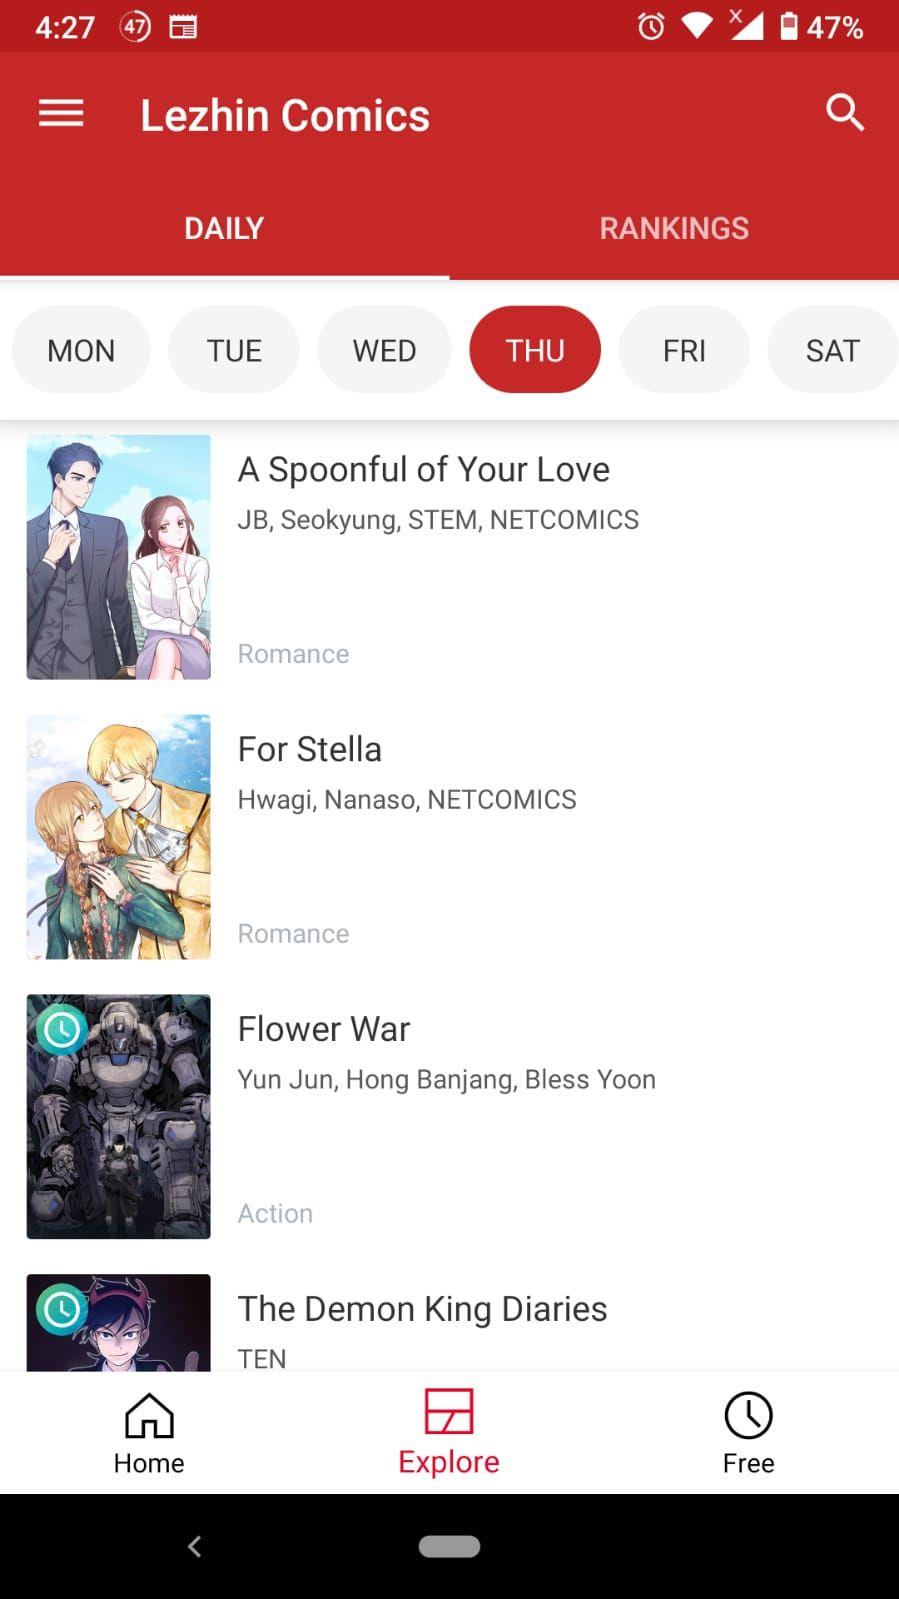 أفضل 5 تطبيقات Manhwa و Webtoons لأجهزة Android و iPhone